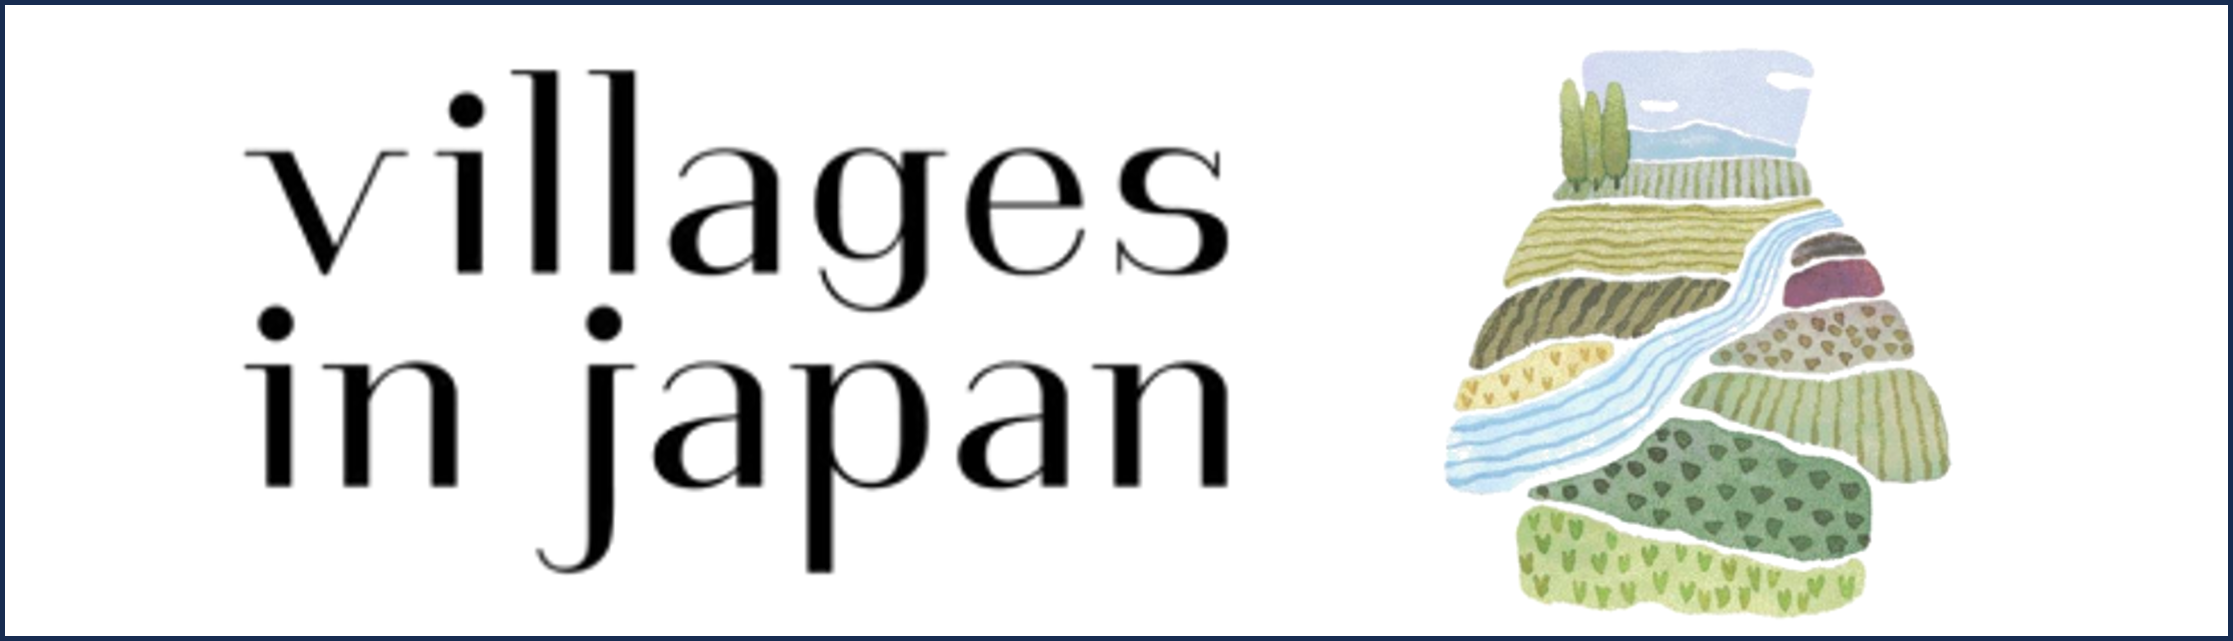 NPO法人「日本で最も美しい村」連合